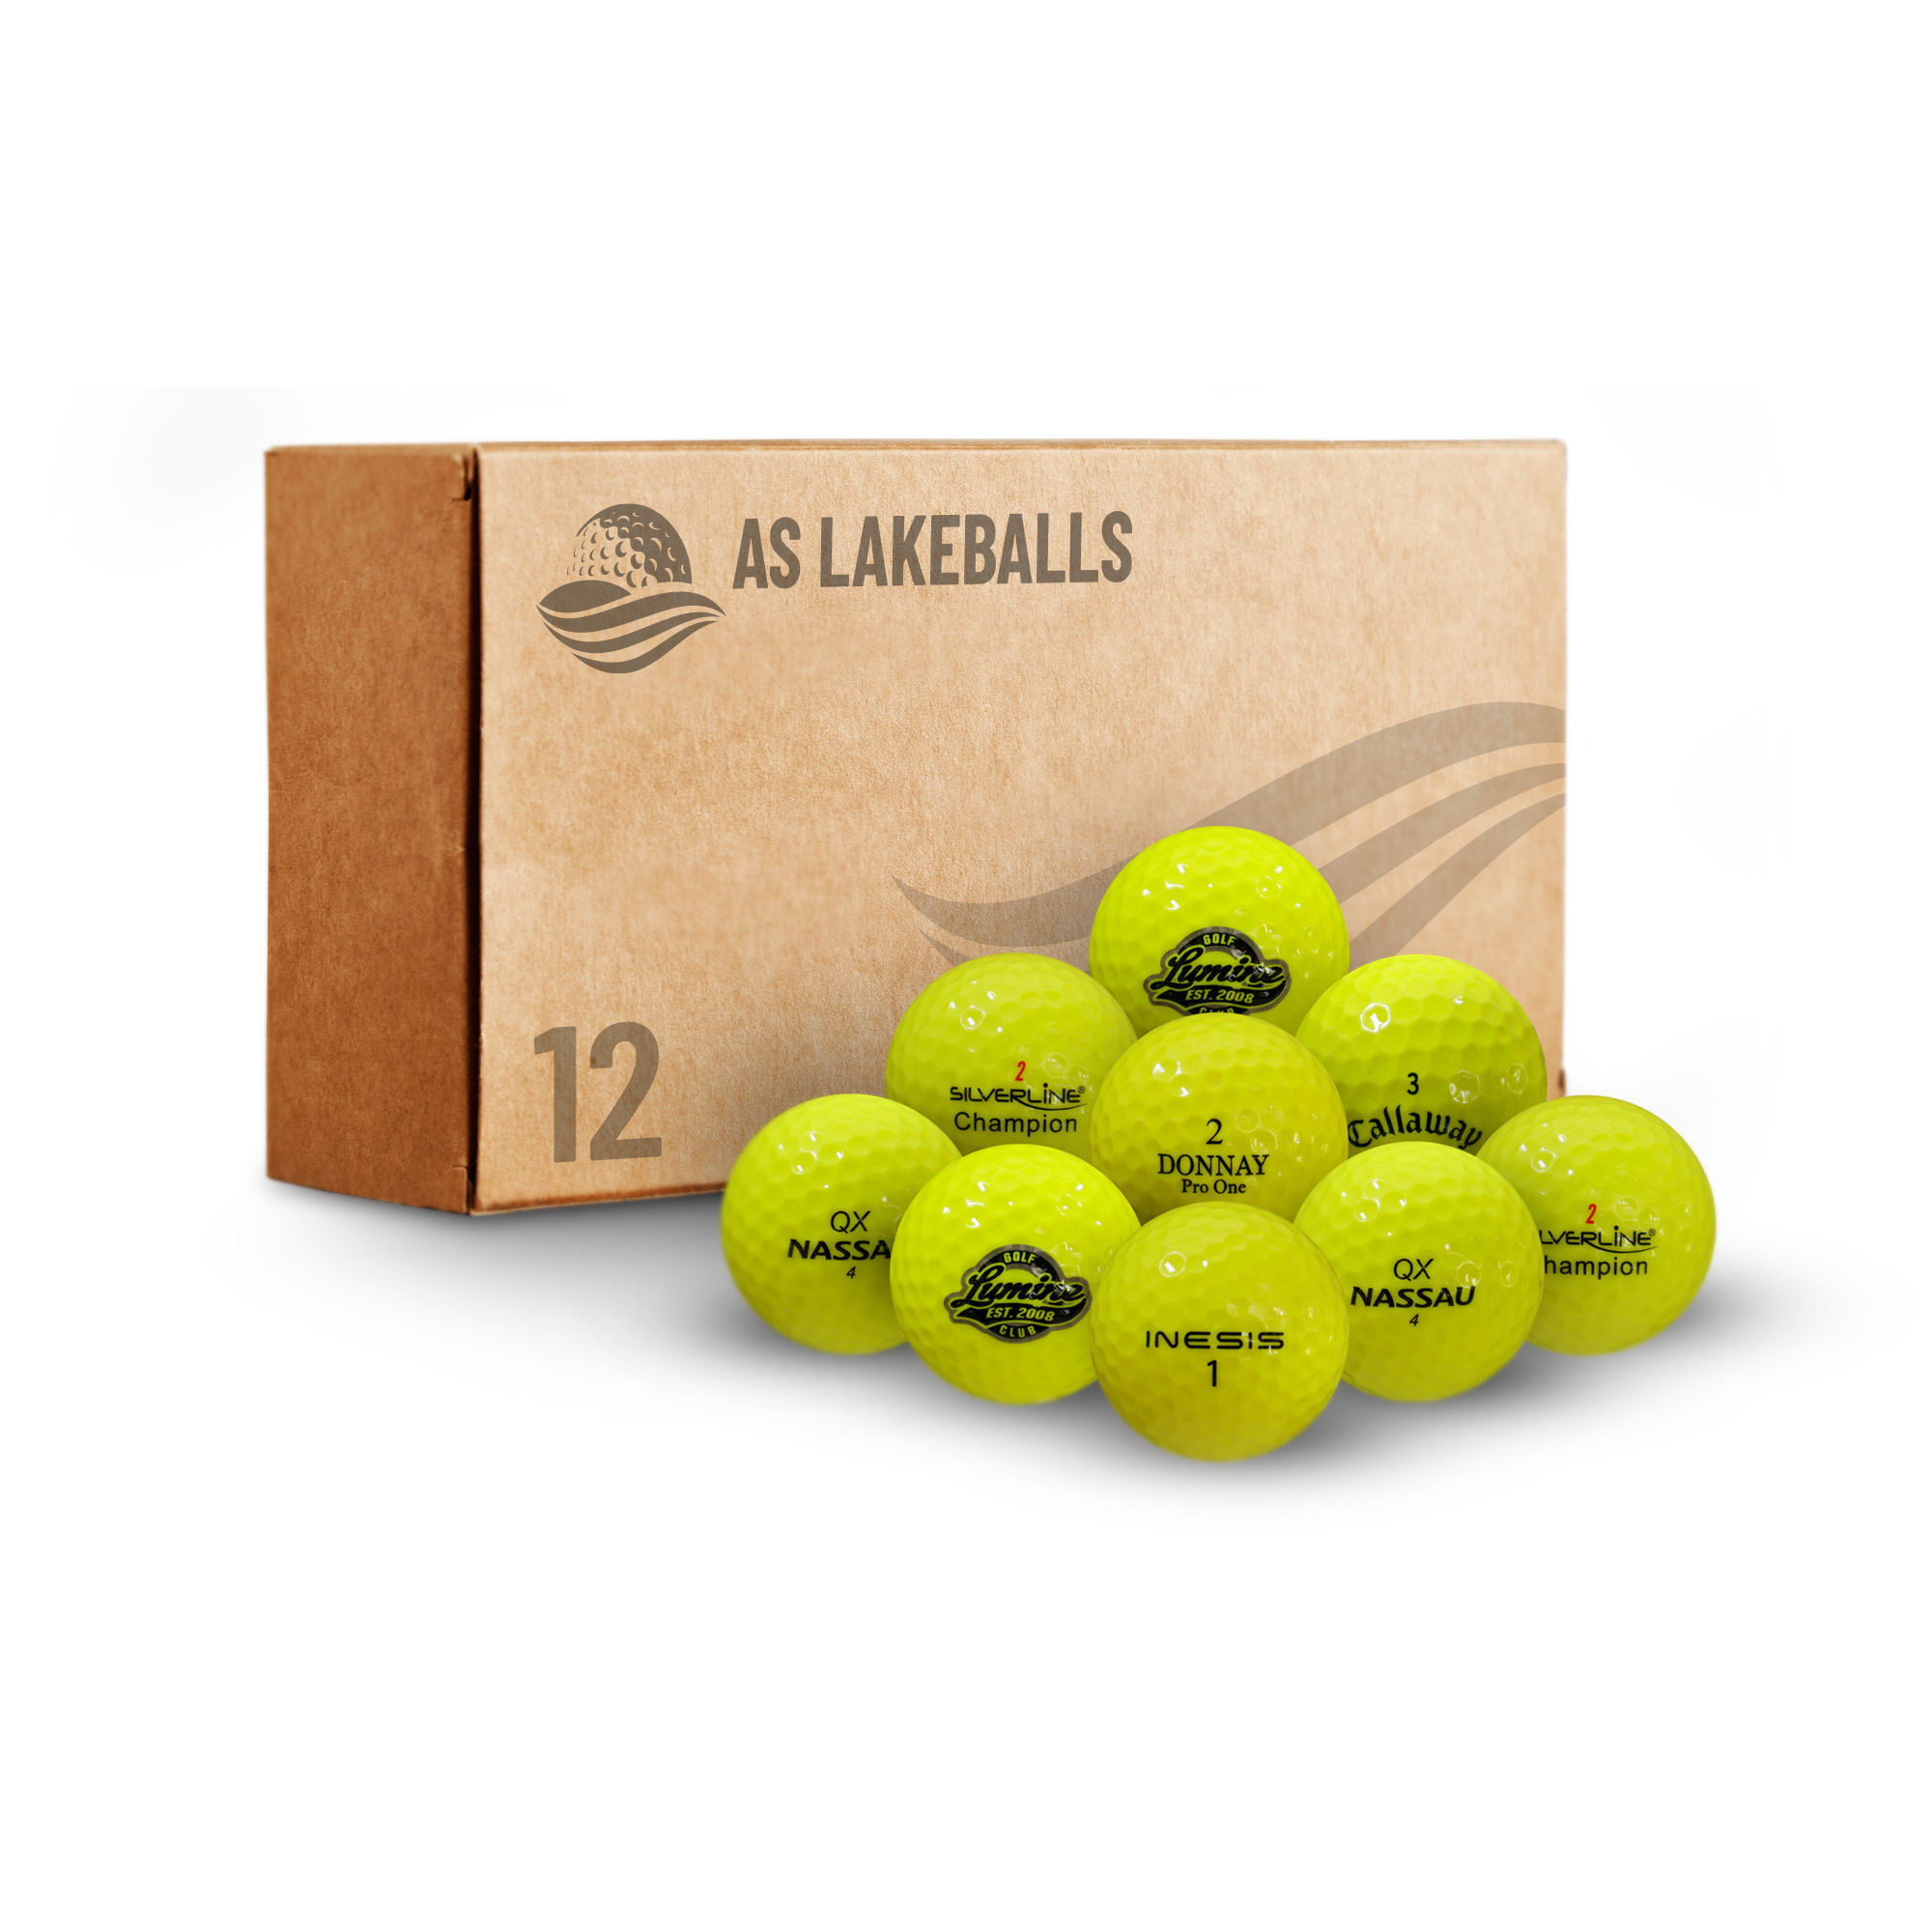 12 Stück Mixbälle leuchtgelb/gelb AA Lakeballs